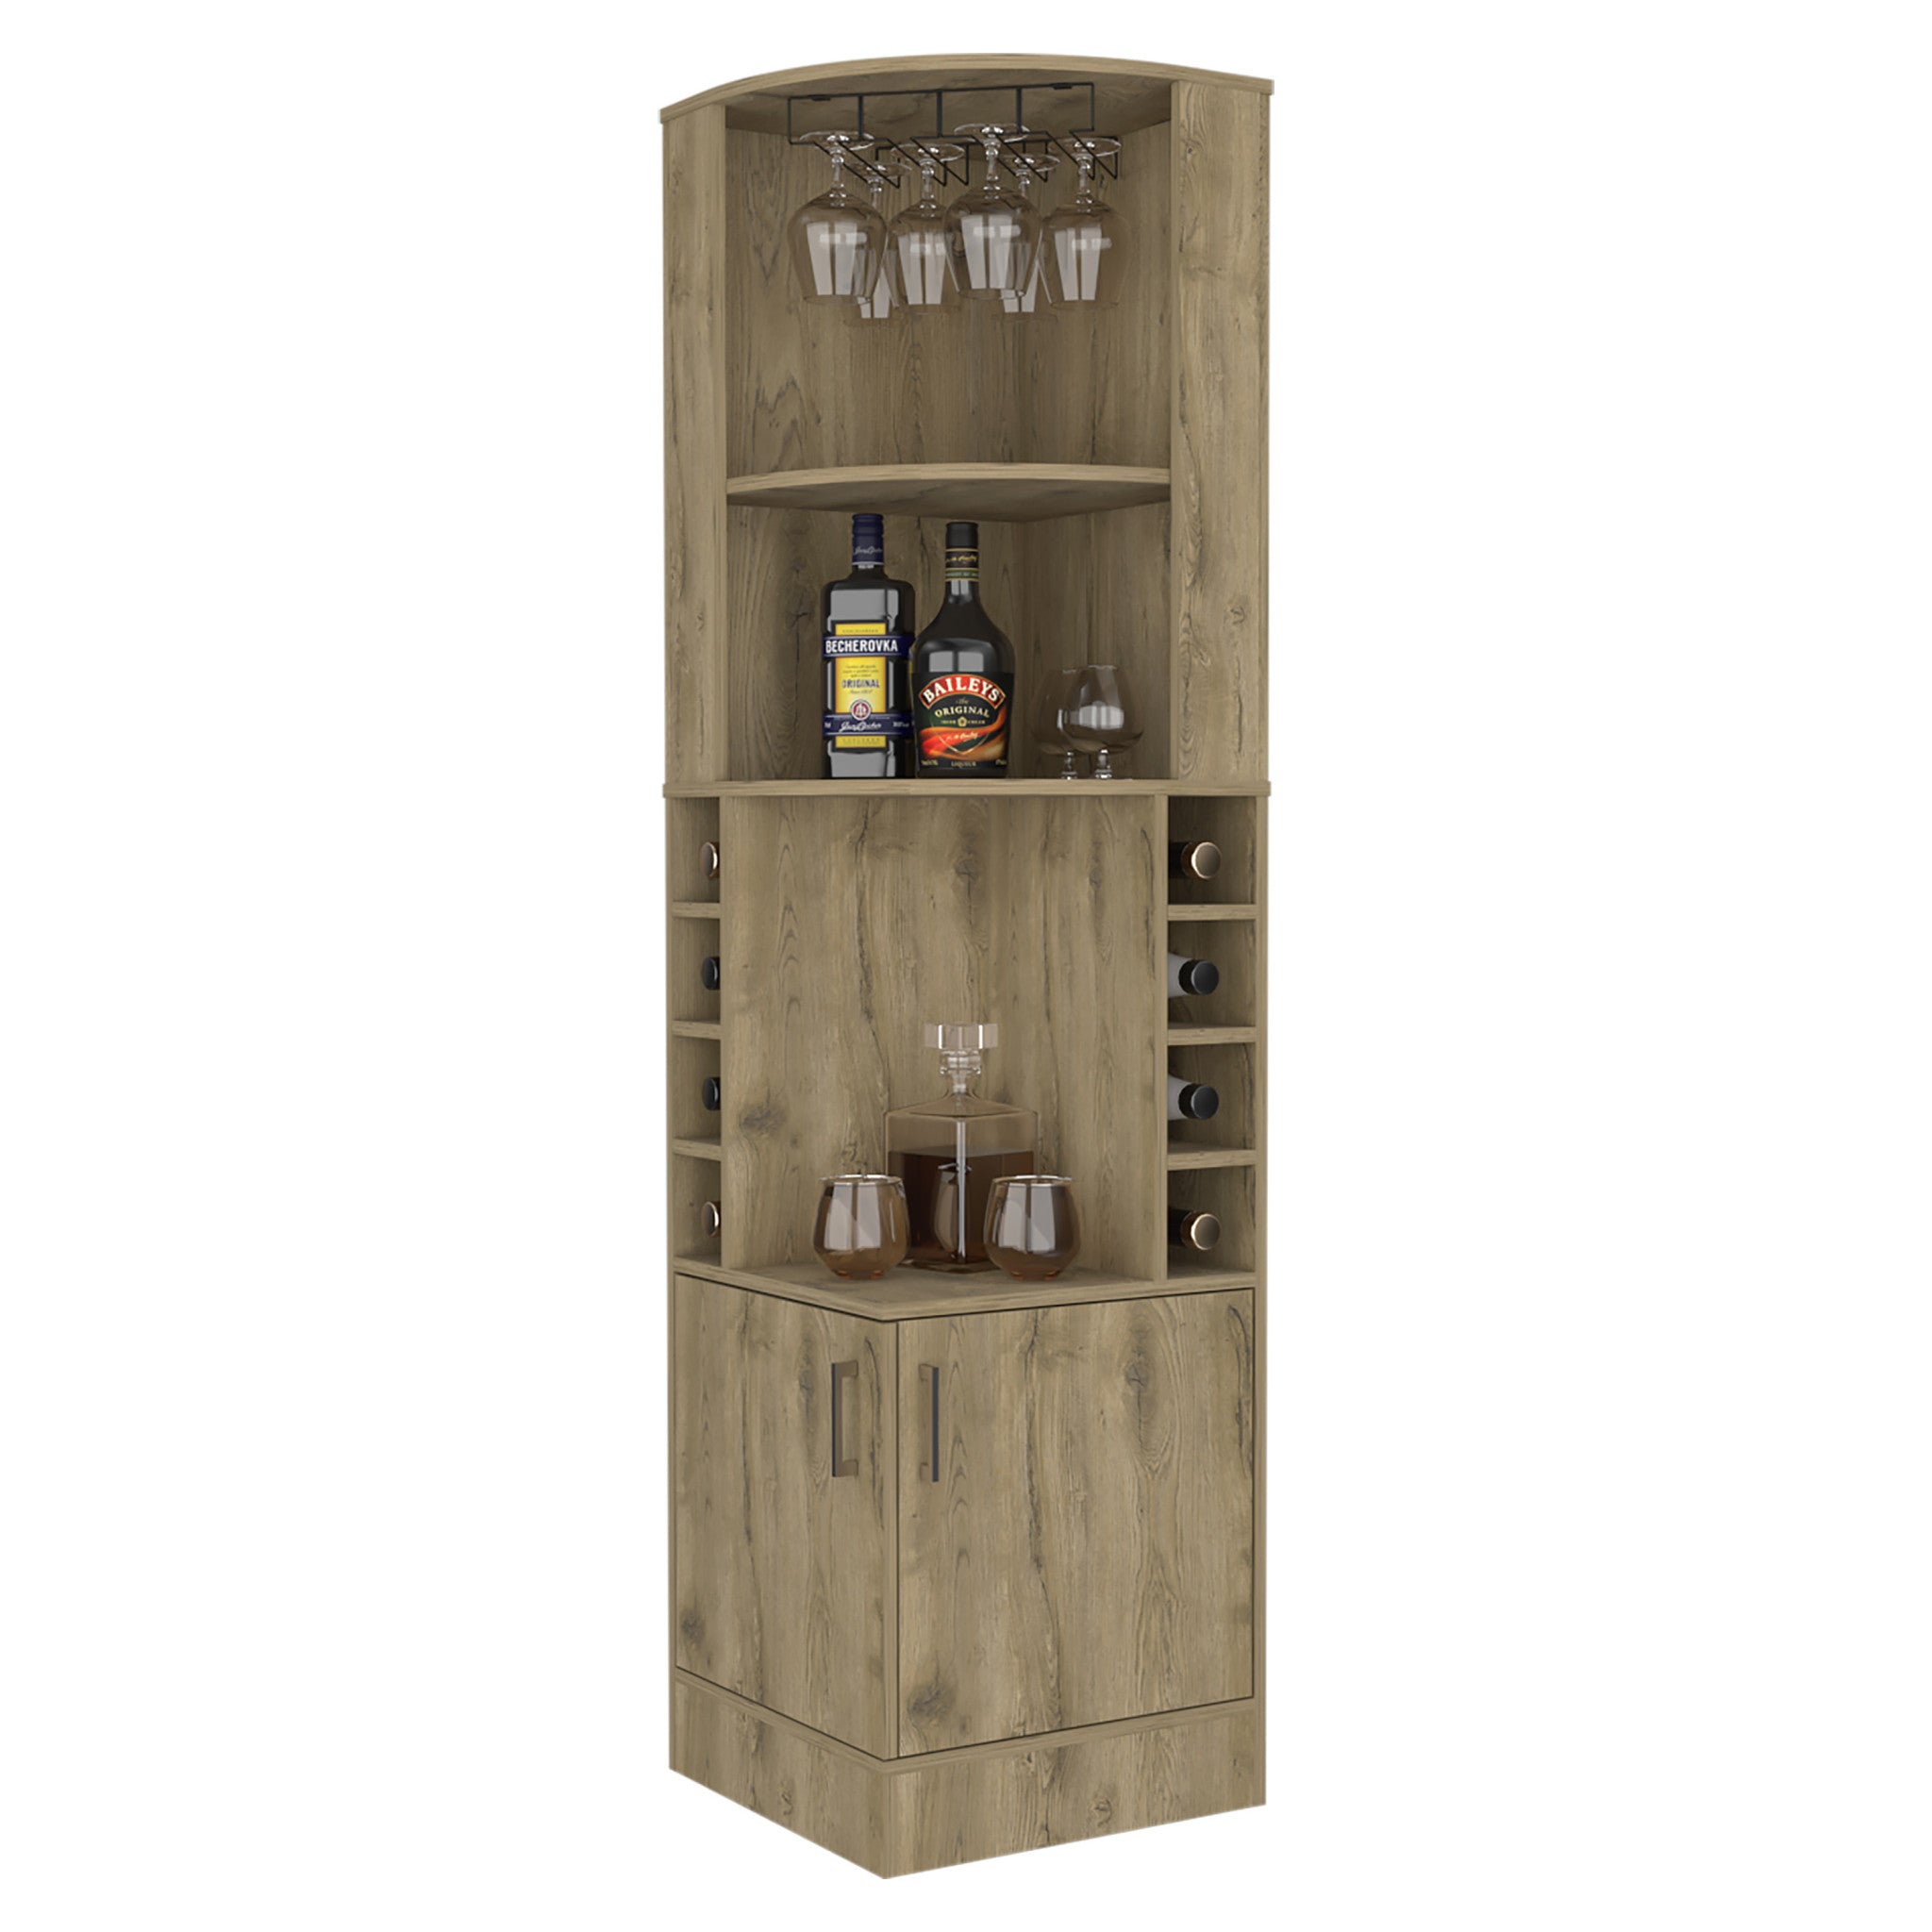 18" Brown Corner Bar Cabinet With Eleven Shelves